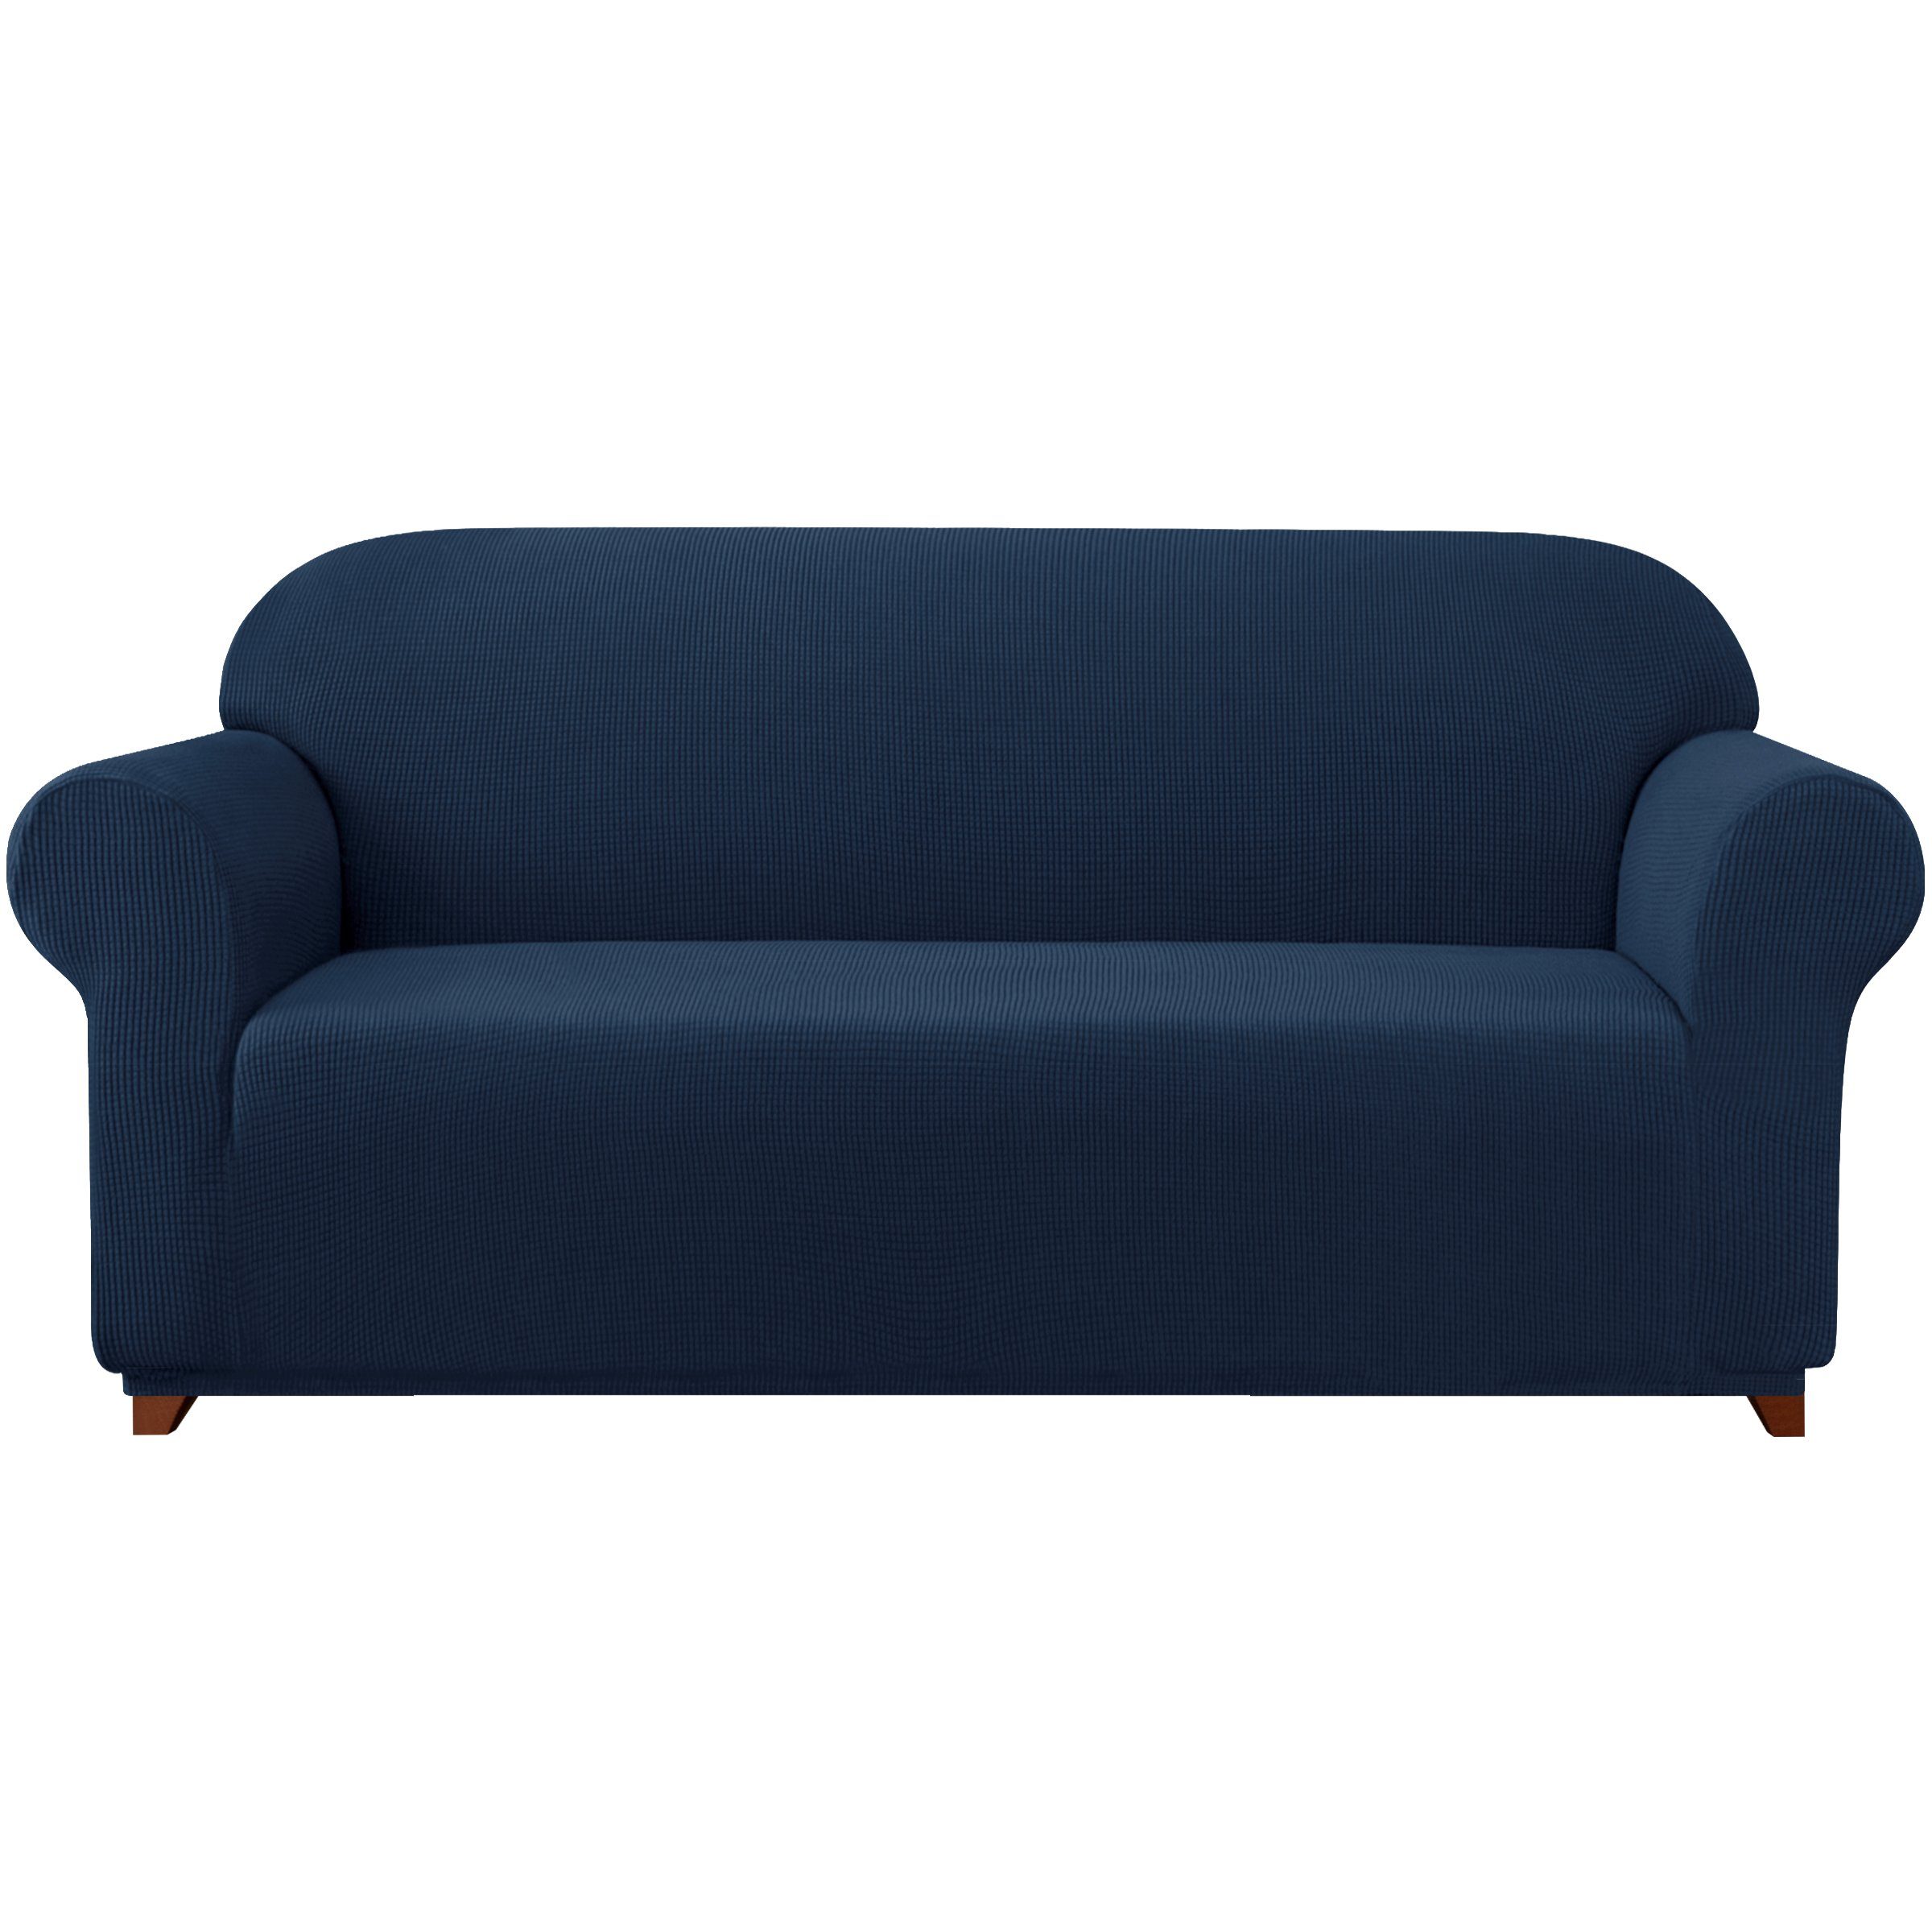 Sofahusse 2/3/4 Sitzer Sofabezug, SUBRTEX, mit dezentem Muster Marineblau